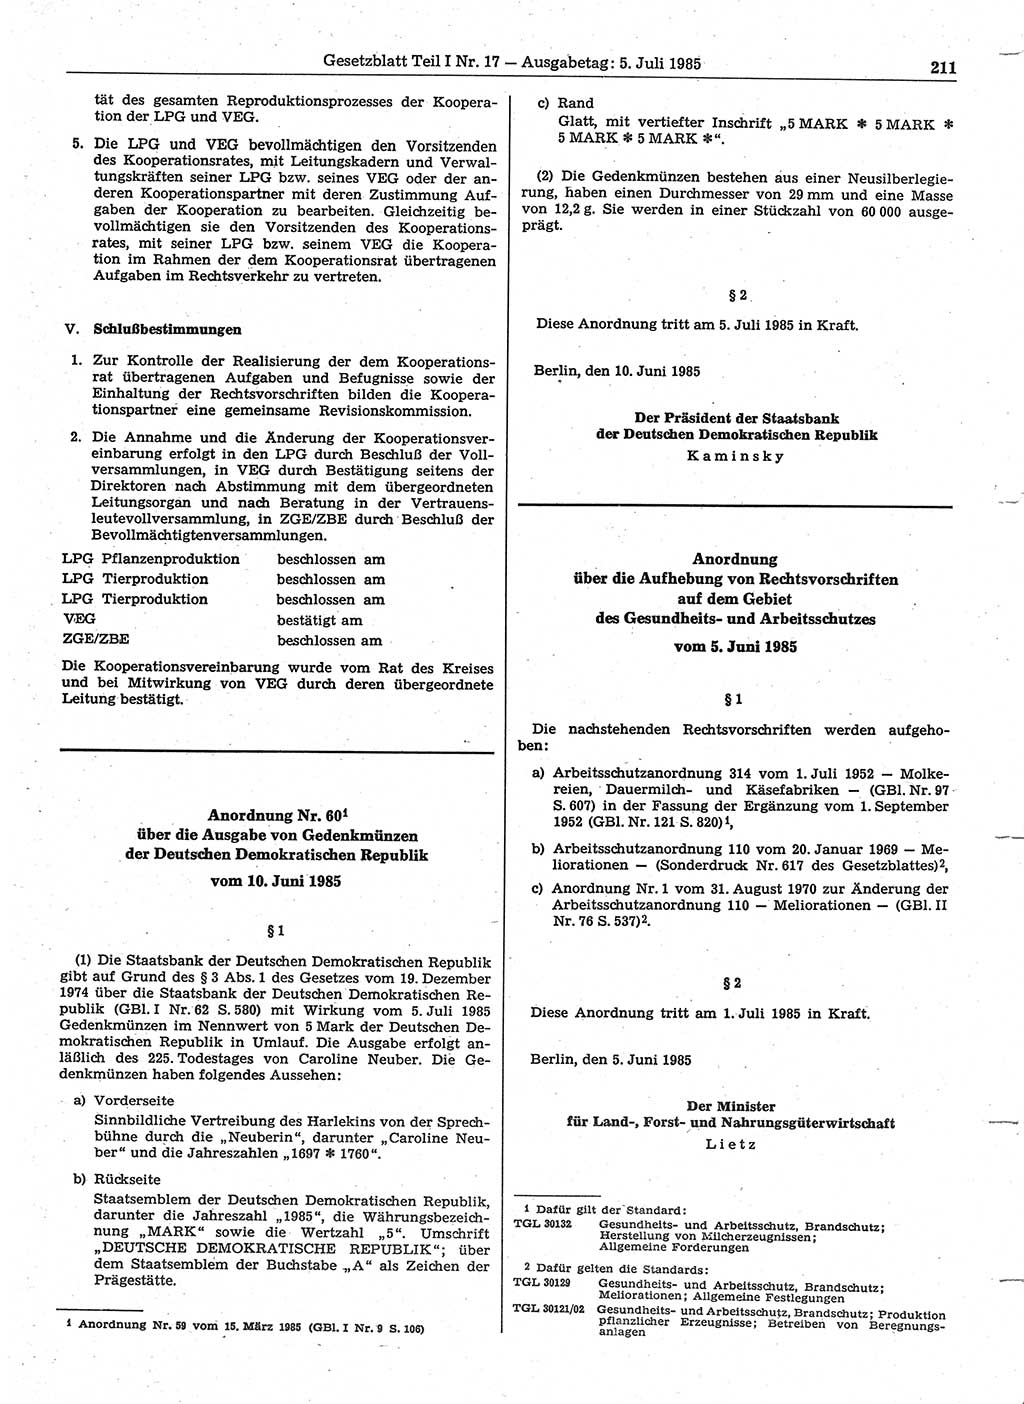 Gesetzblatt (GBl.) der Deutschen Demokratischen Republik (DDR) Teil Ⅰ 1985, Seite 211 (GBl. DDR Ⅰ 1985, S. 211)